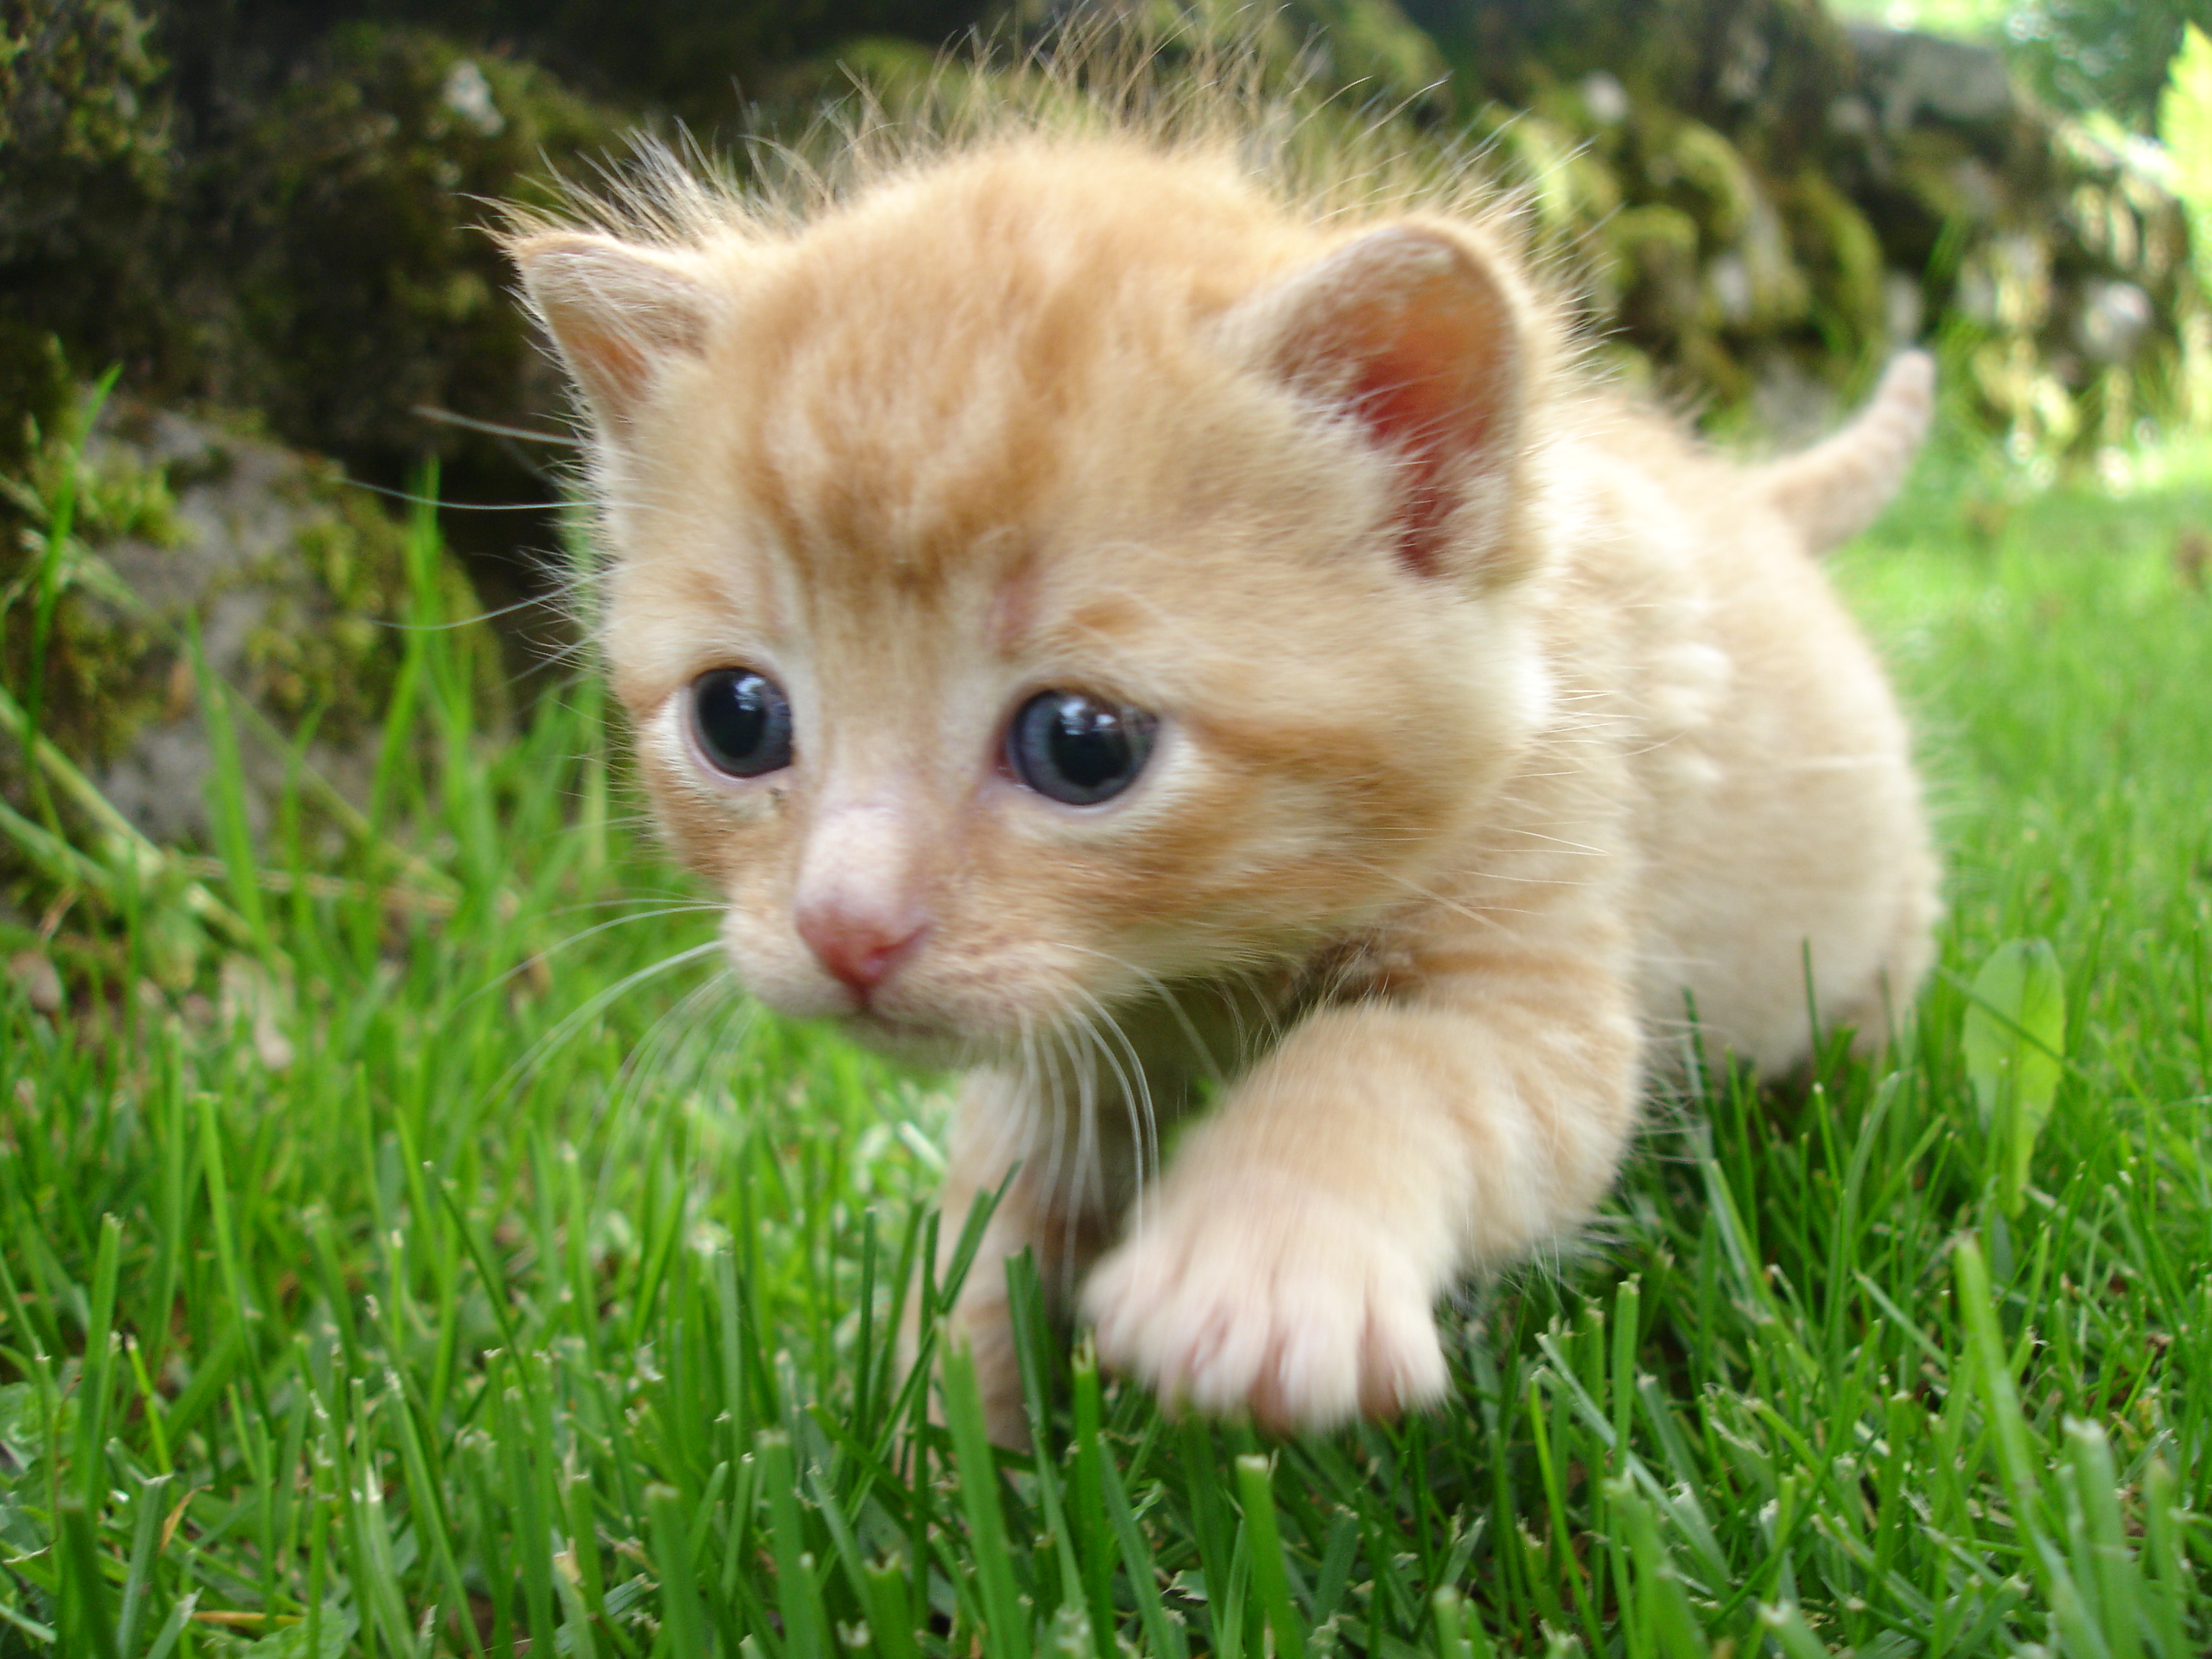 cats, blue eyes, animals, grass, kittens - desktop wallpaper